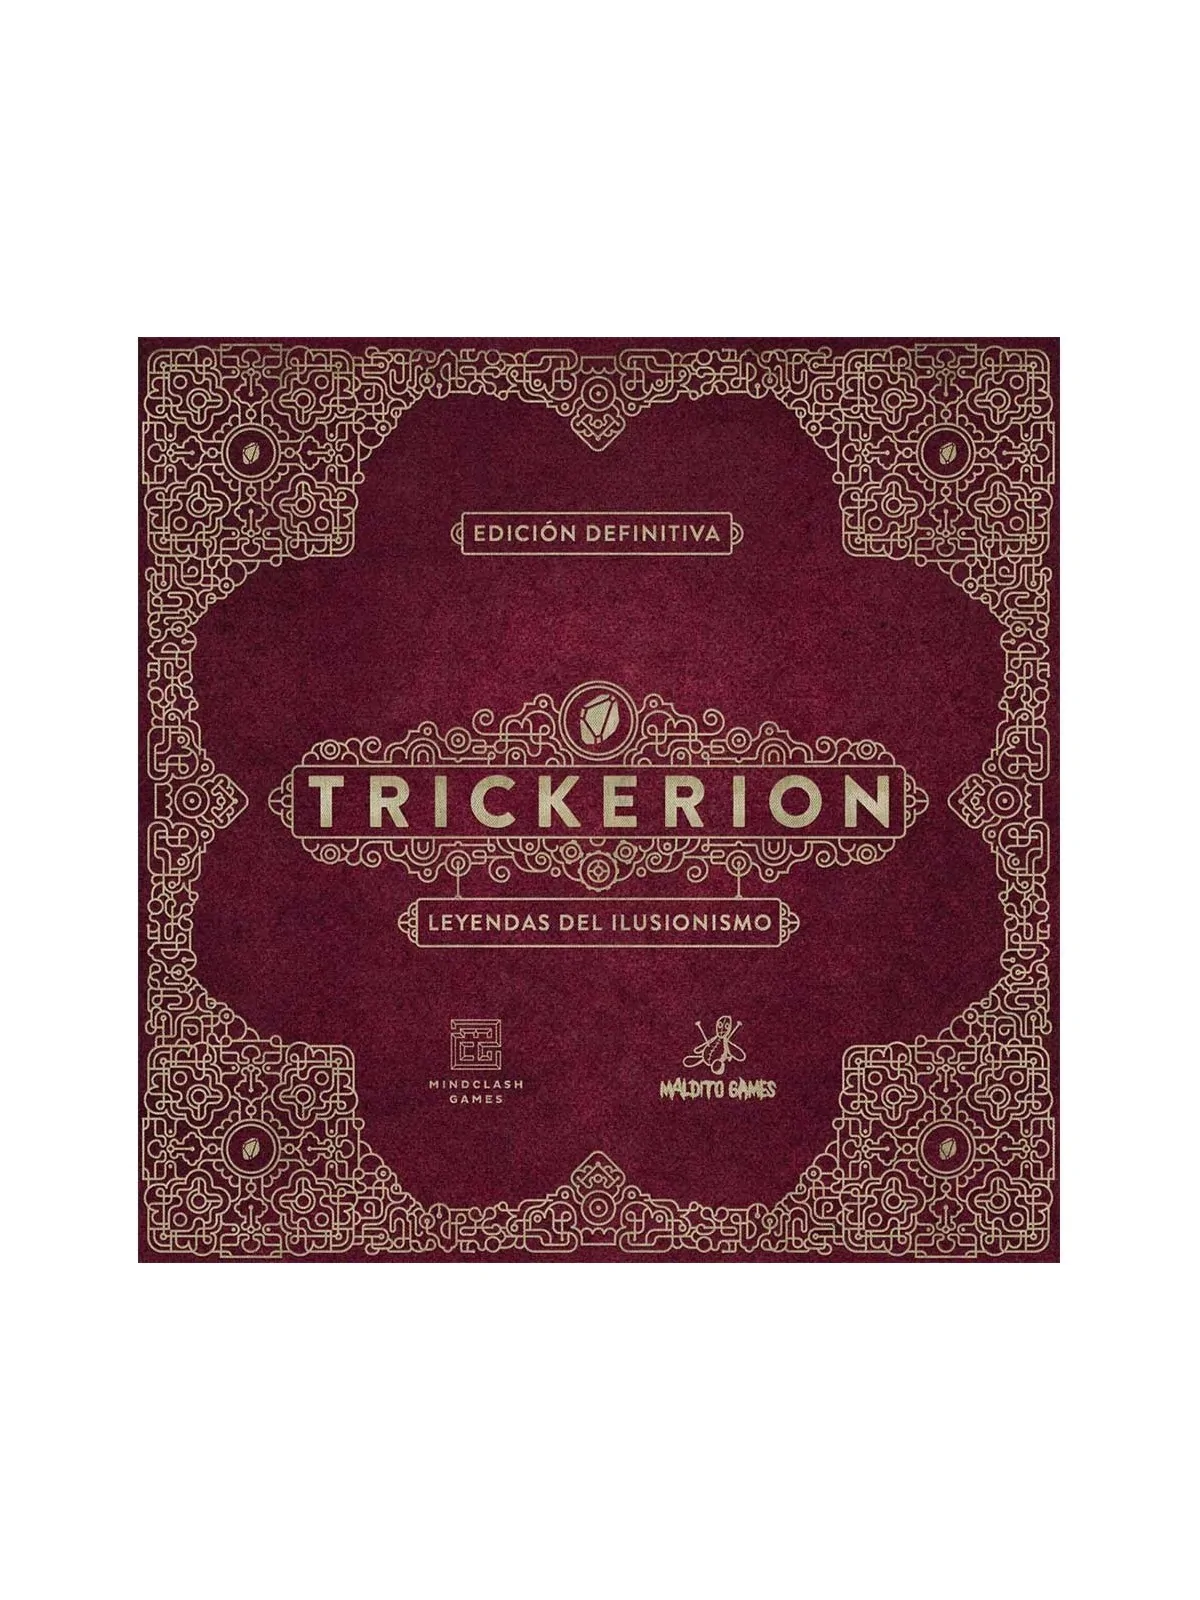 Comprar Trickerion: Leyendas del Ilusionismo barato al mejor precio 11